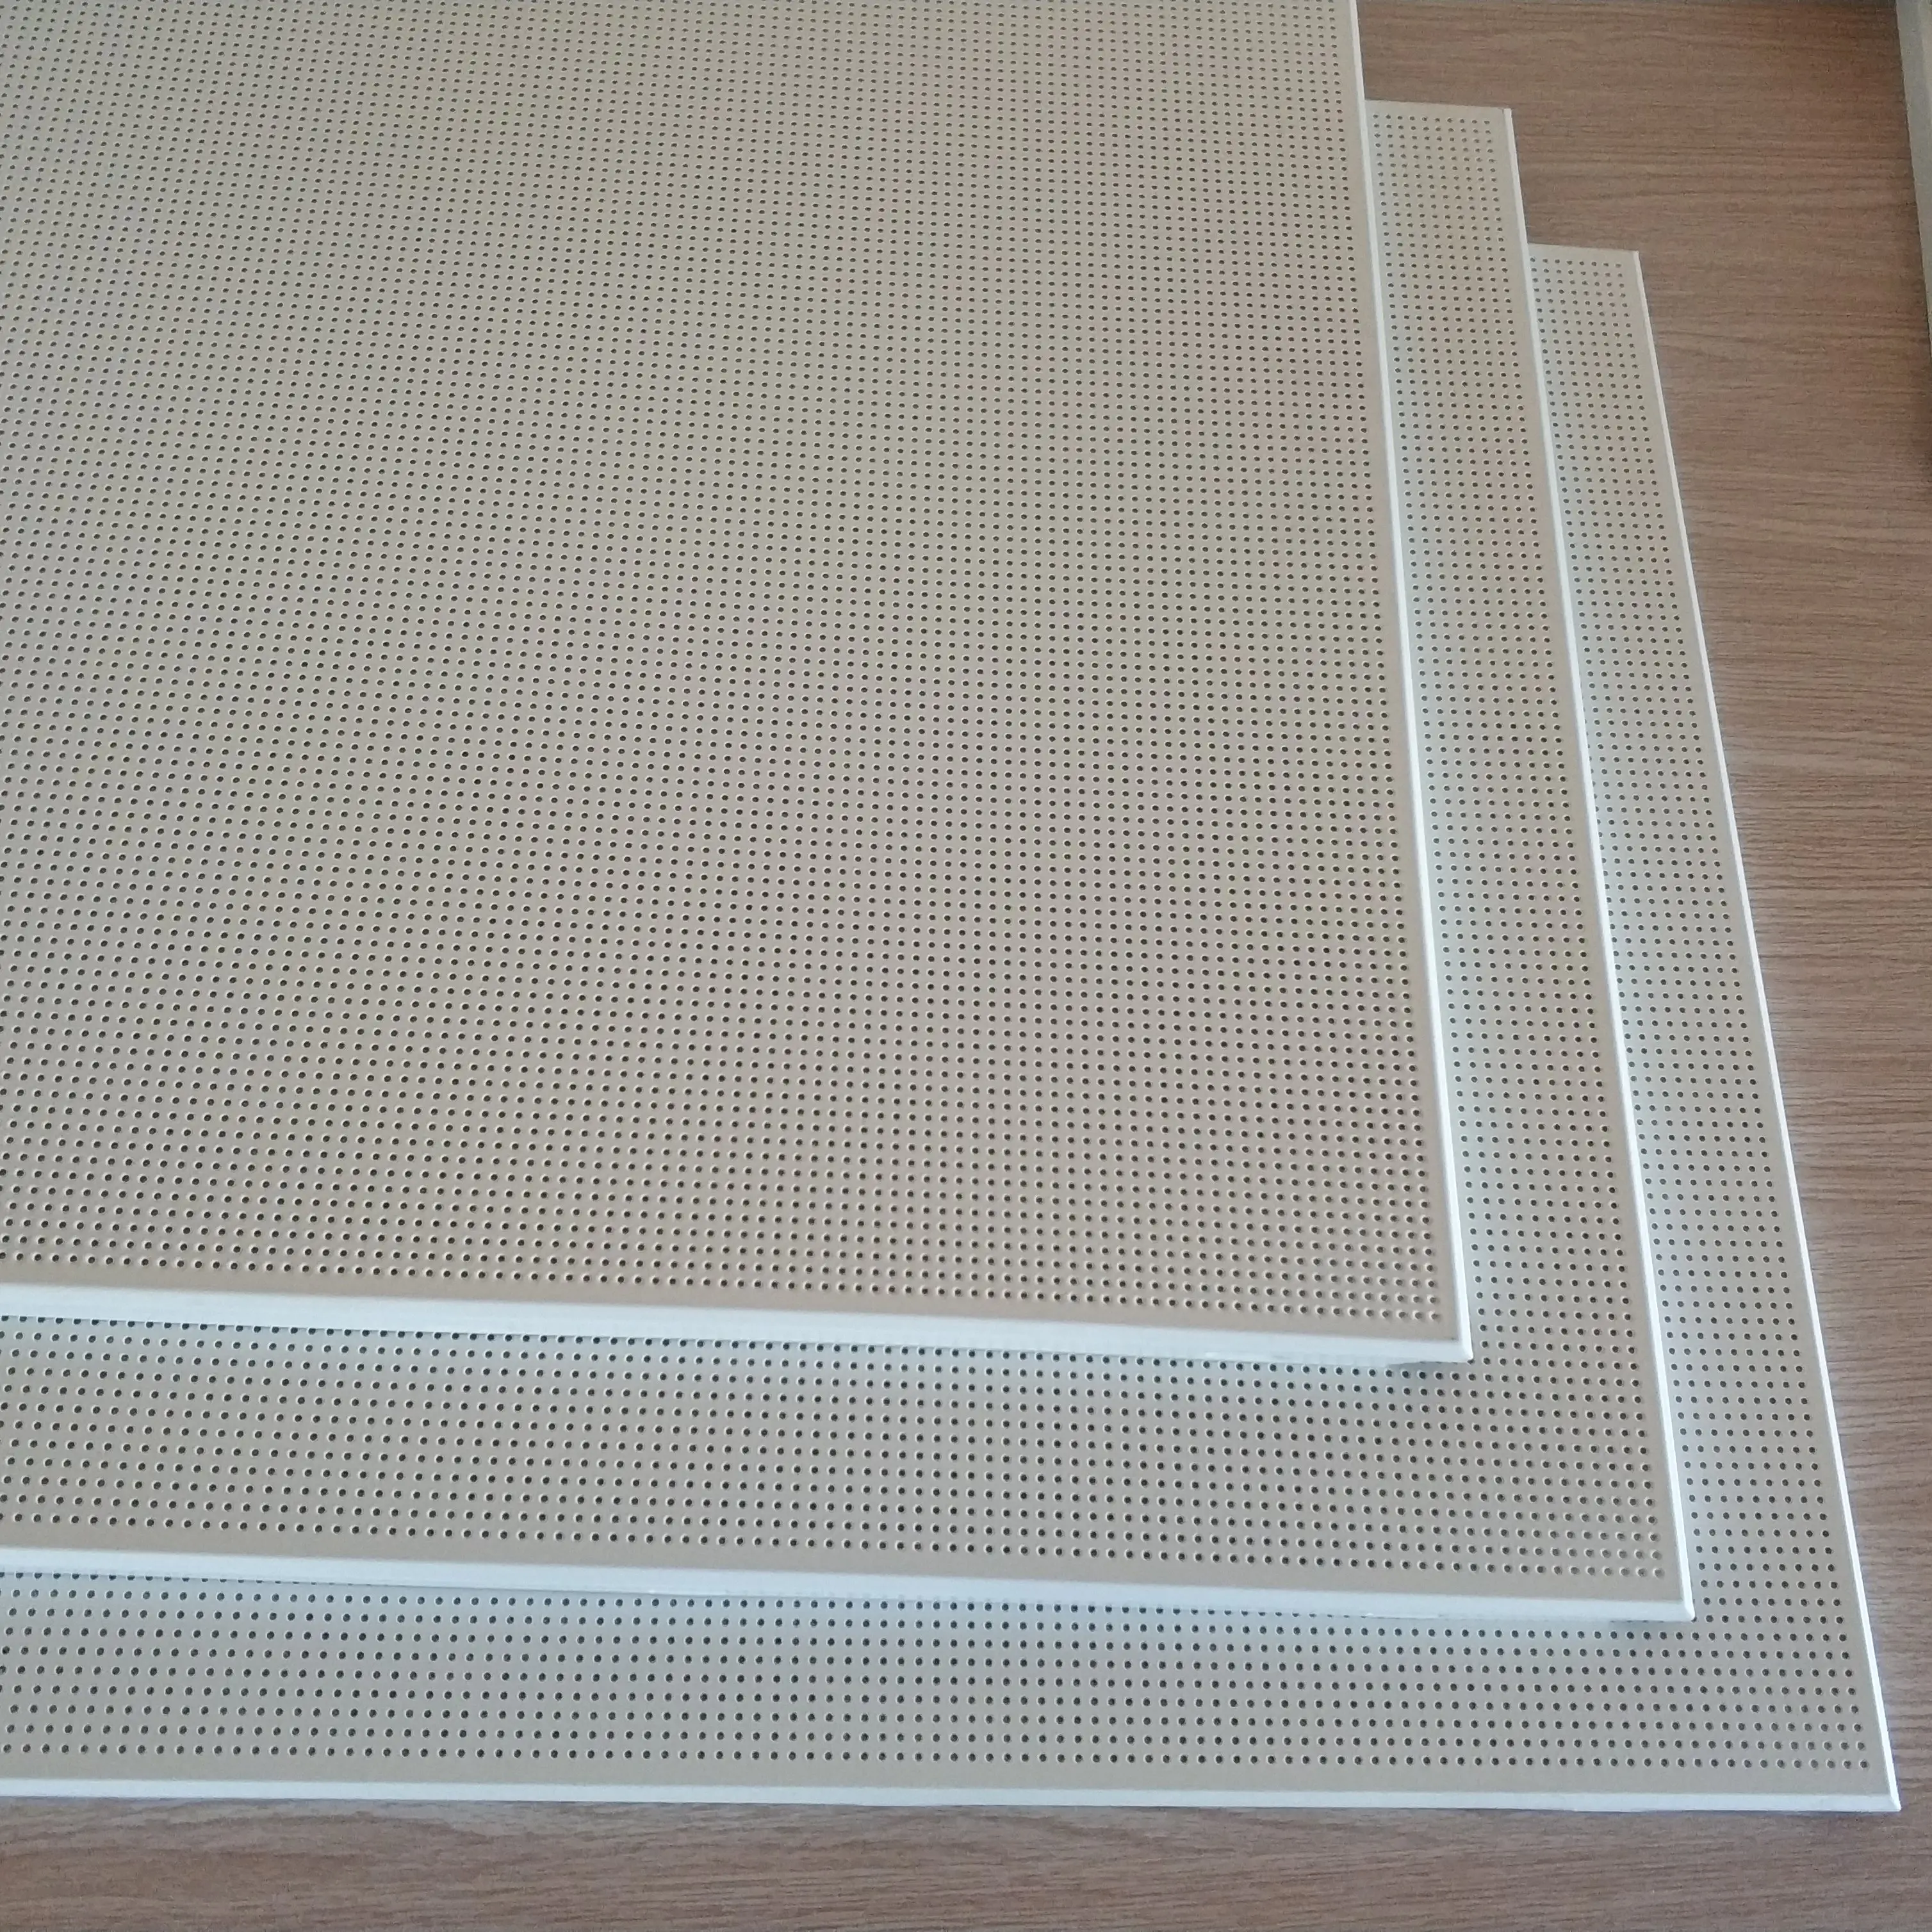 Aluminum sheet for ceiling tile